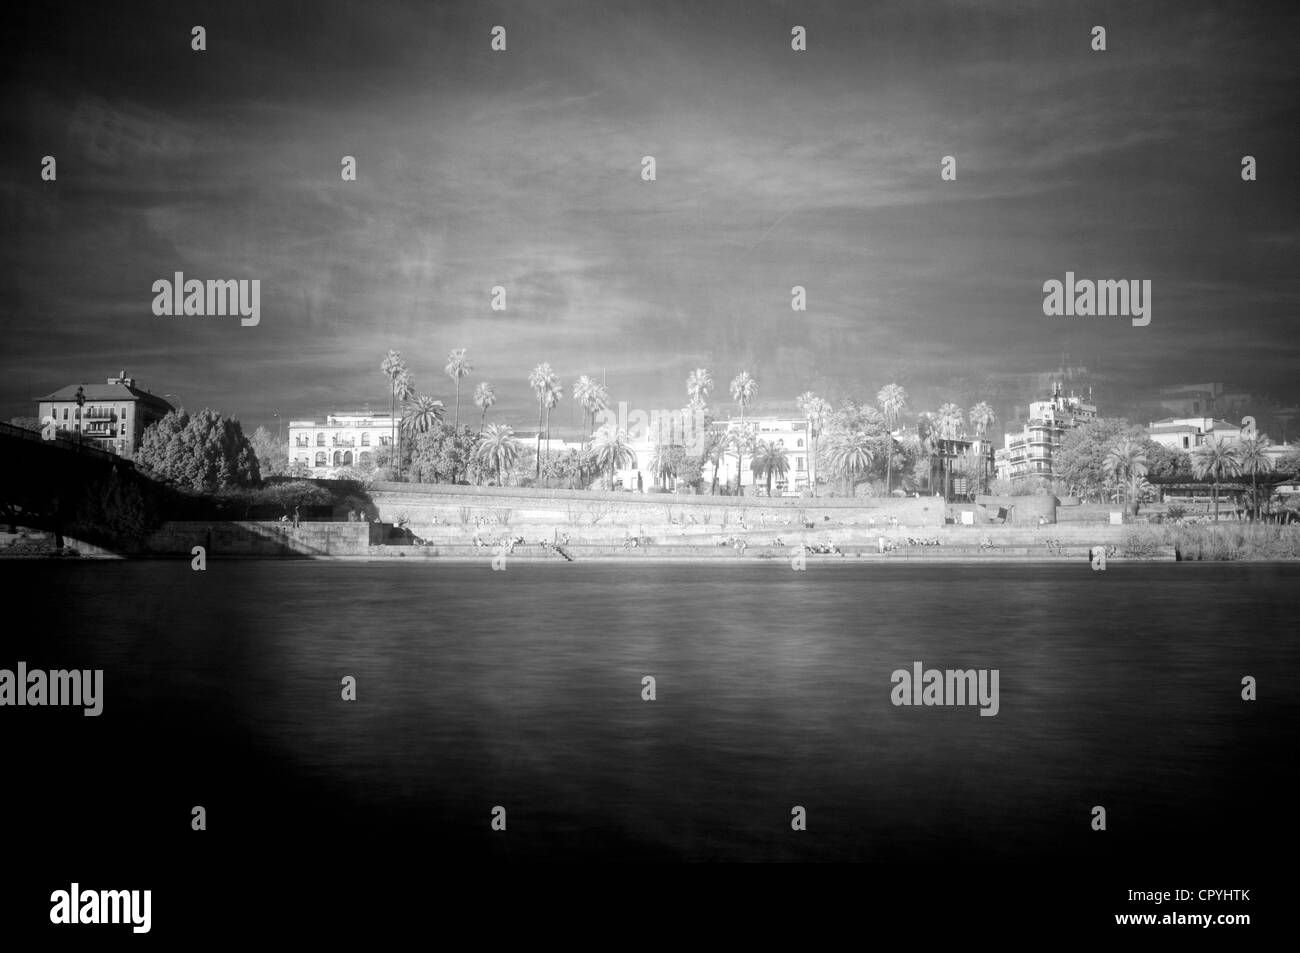 Raggi infrarossi e doppia esposizione immagine del fiume Guadalquivir a Siviglia, Spagna Foto Stock